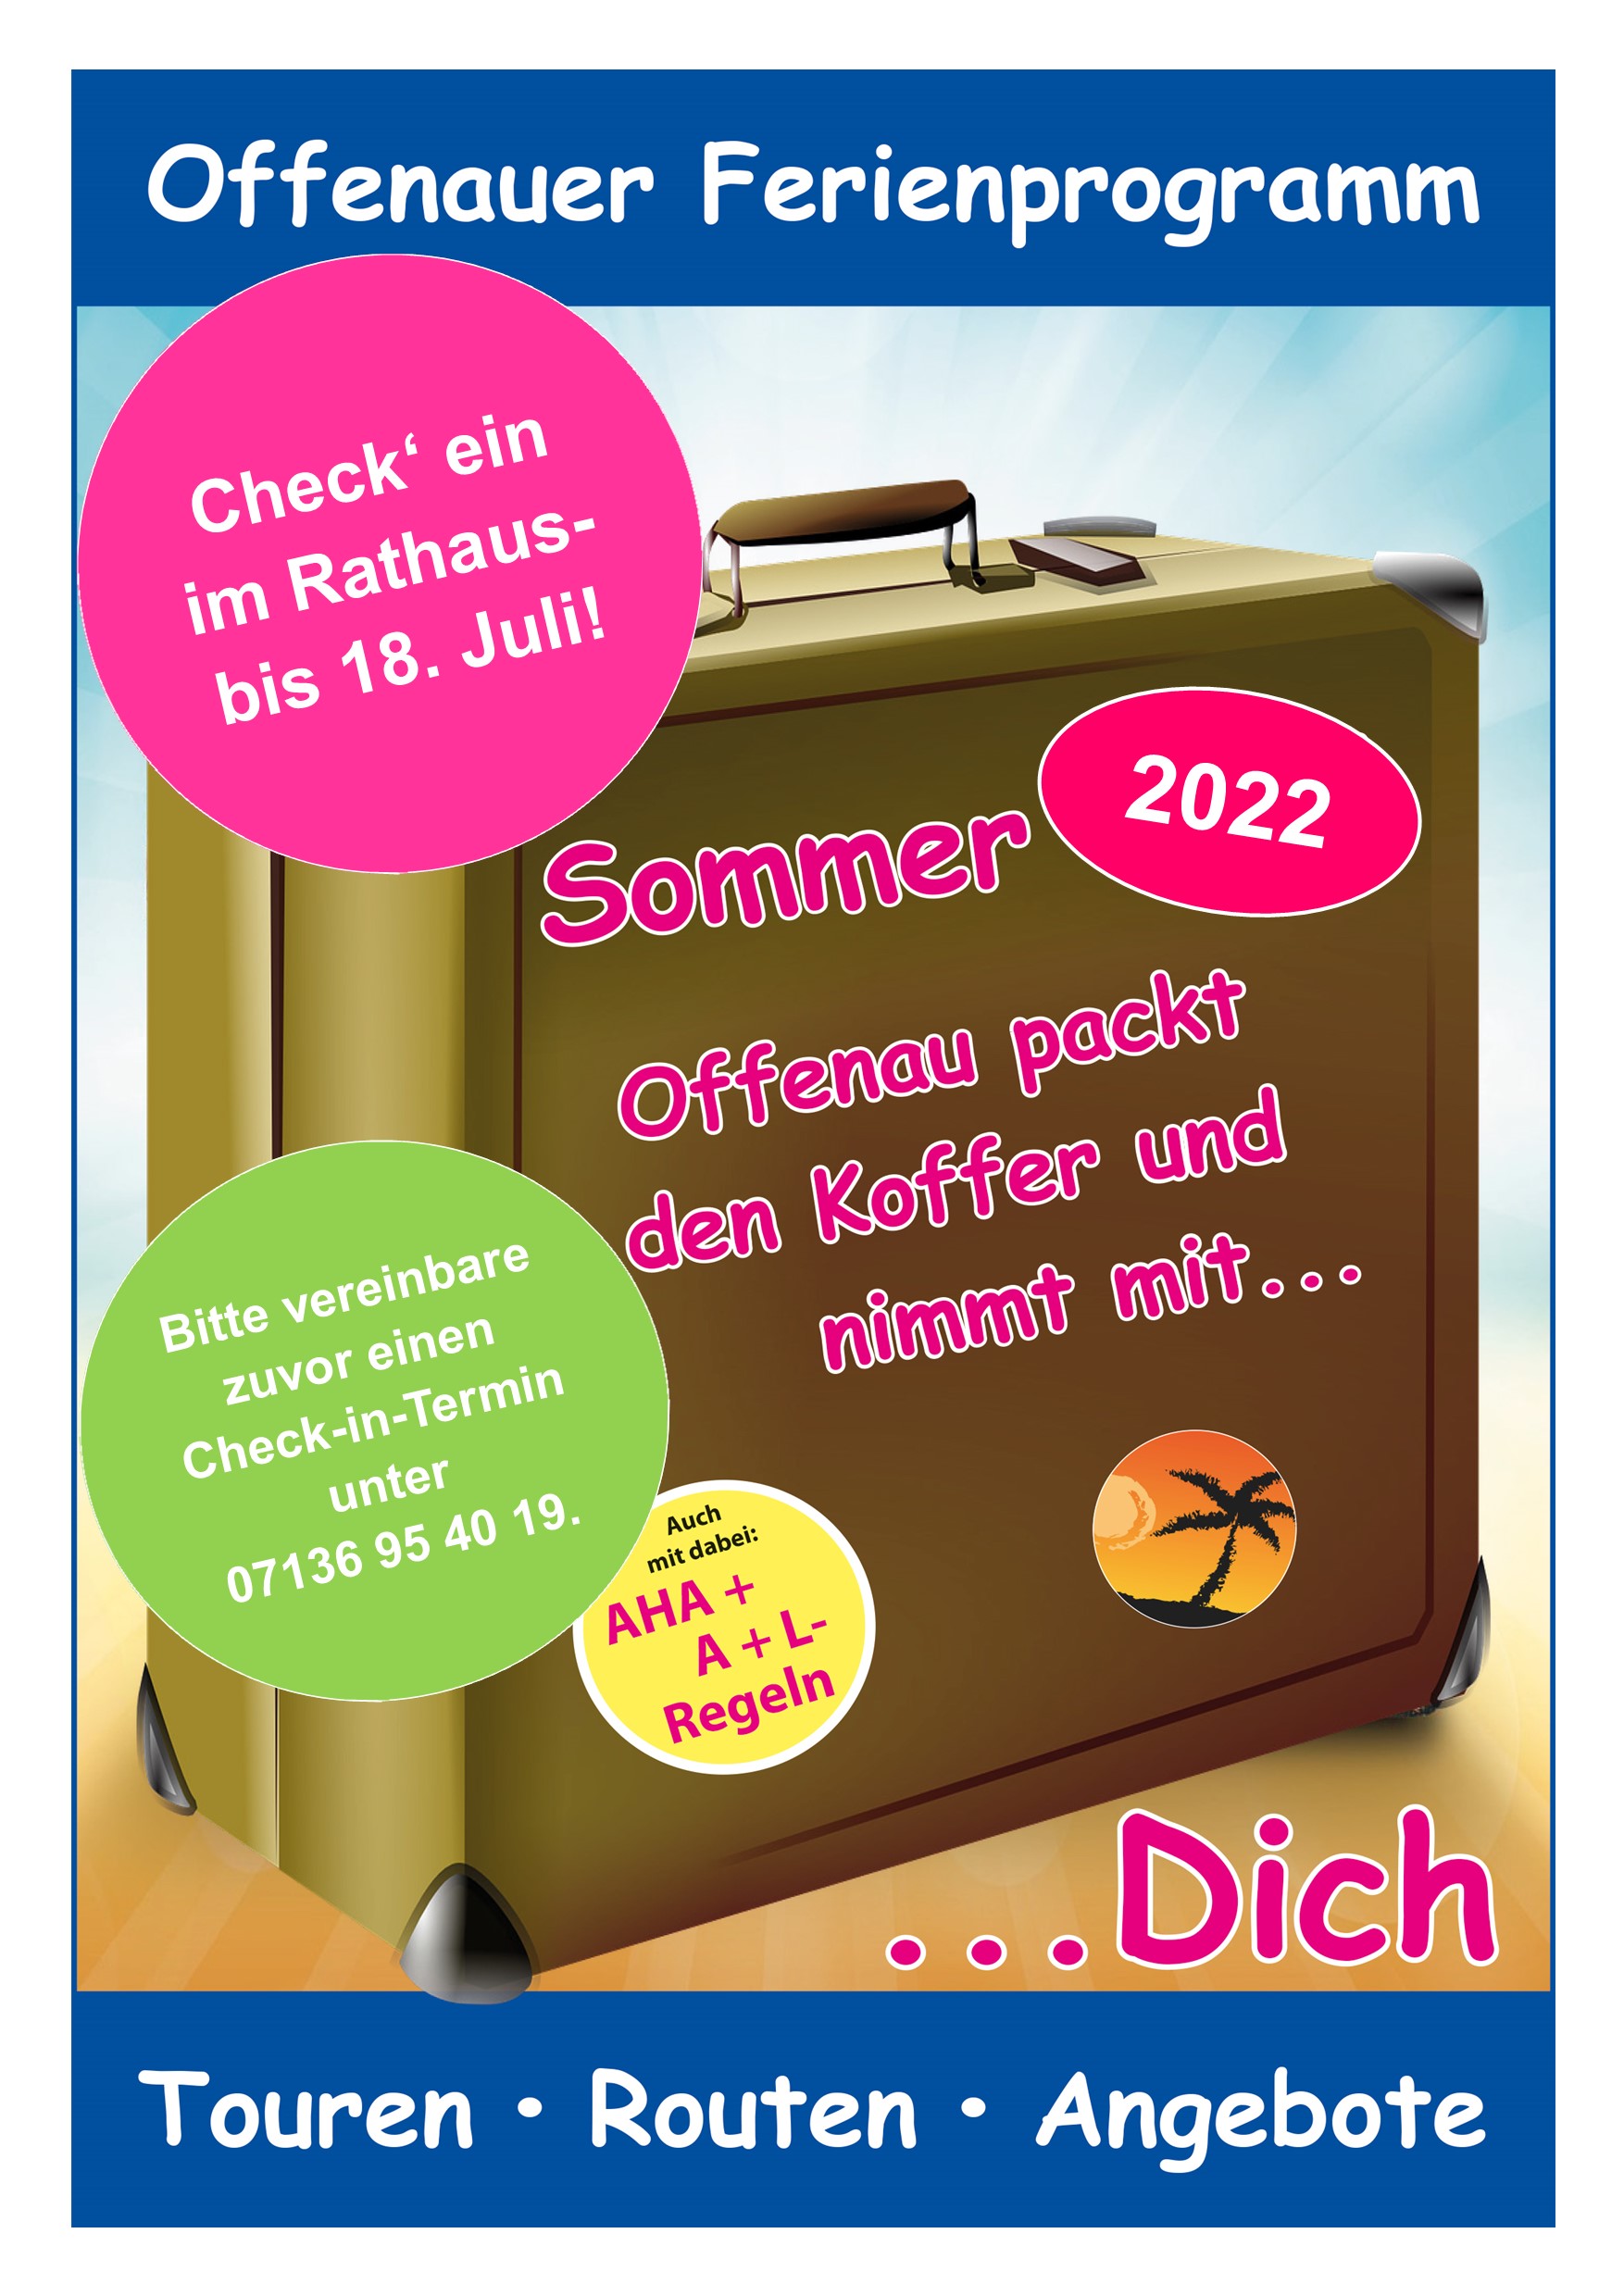 Titelblatt des Offenauer Sommerferienprogramms 2022 als Plakat (Grafik: Gemeinde Offenau)